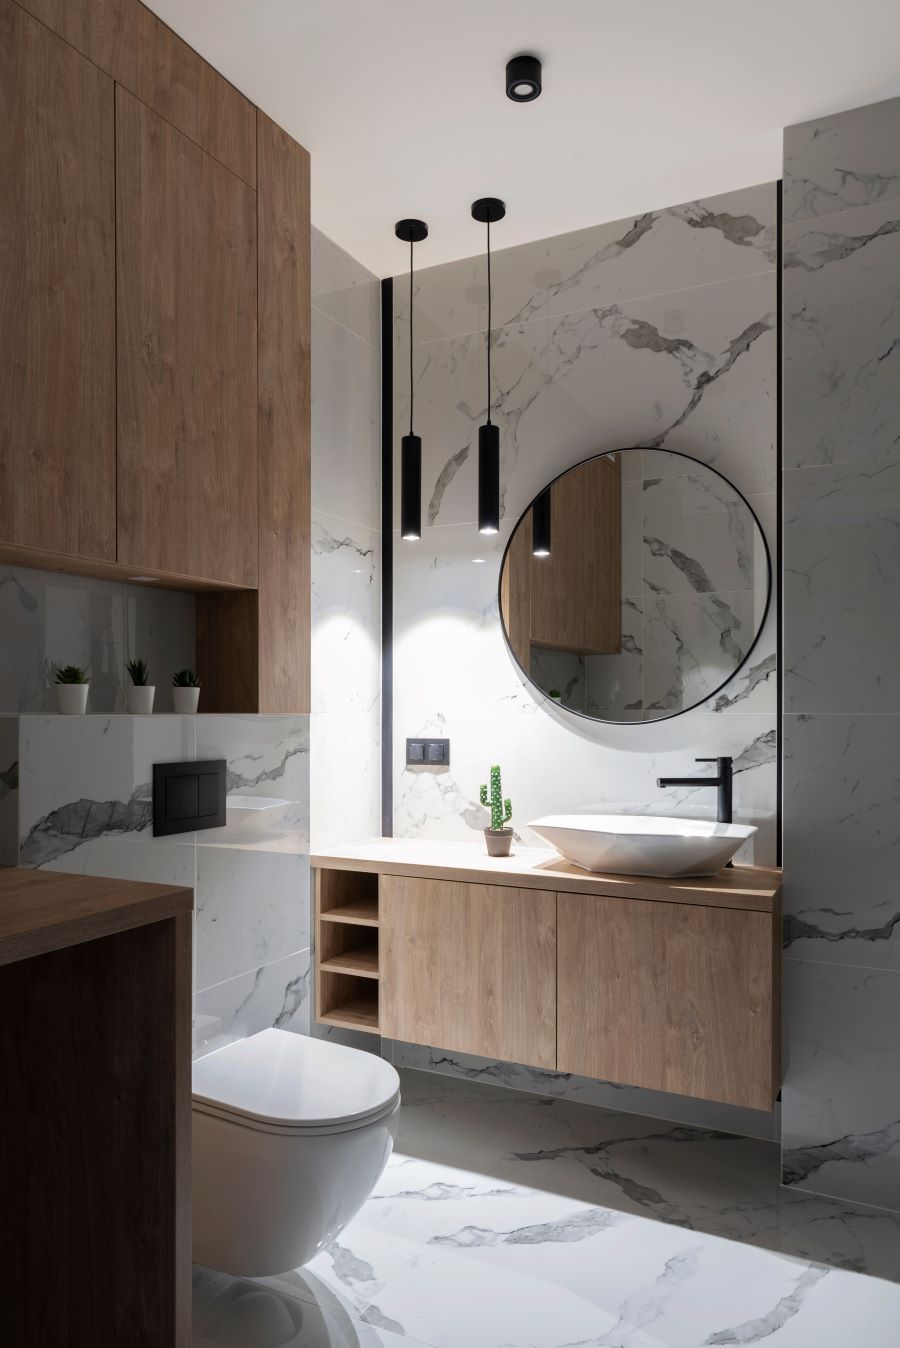 Moderná kúpeľňa s mramorovým obkladom a dreveným nábytkom, okrúhlym zrkadlom a modernými svietidlami.